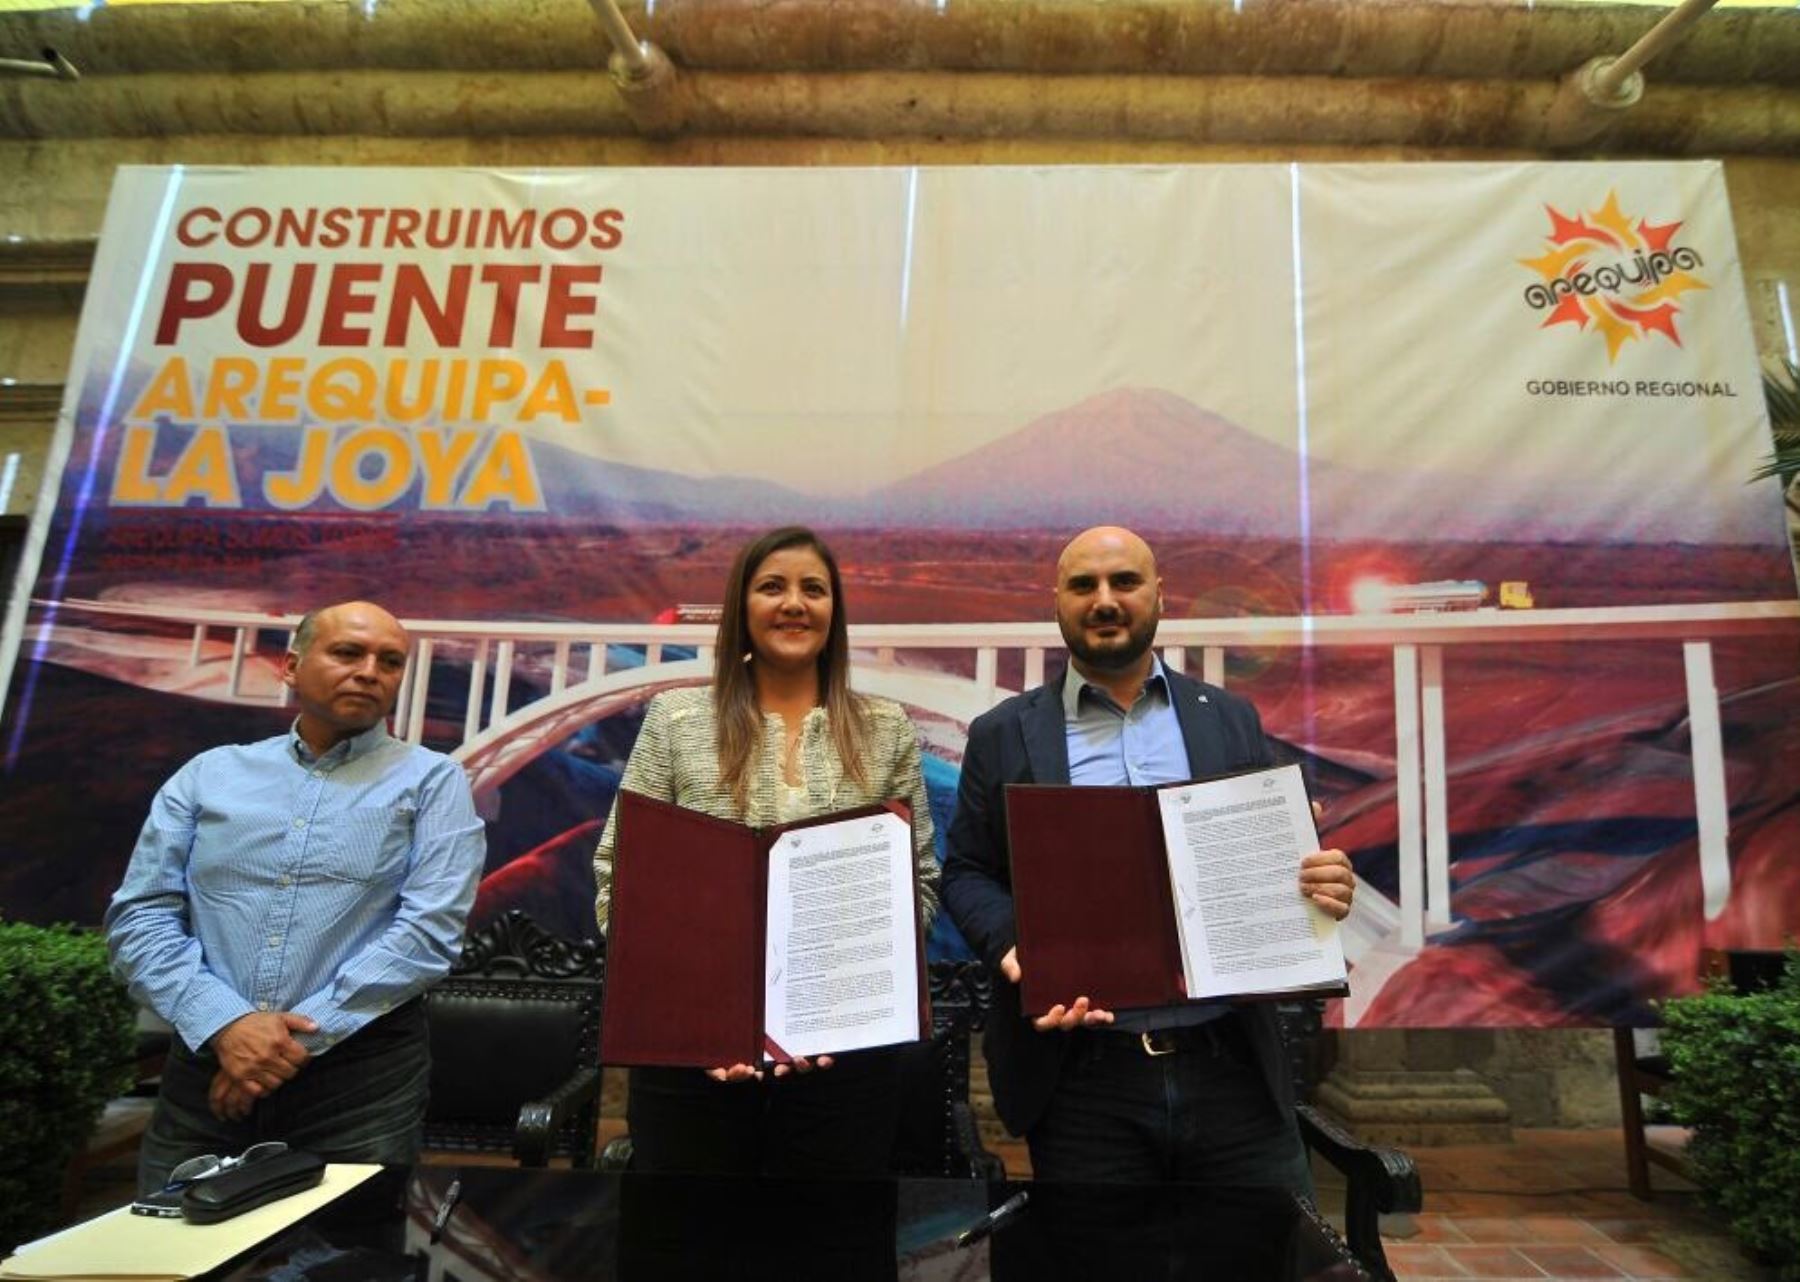 Firman convenio para construir puente de autopista Arequipa-La Joya.